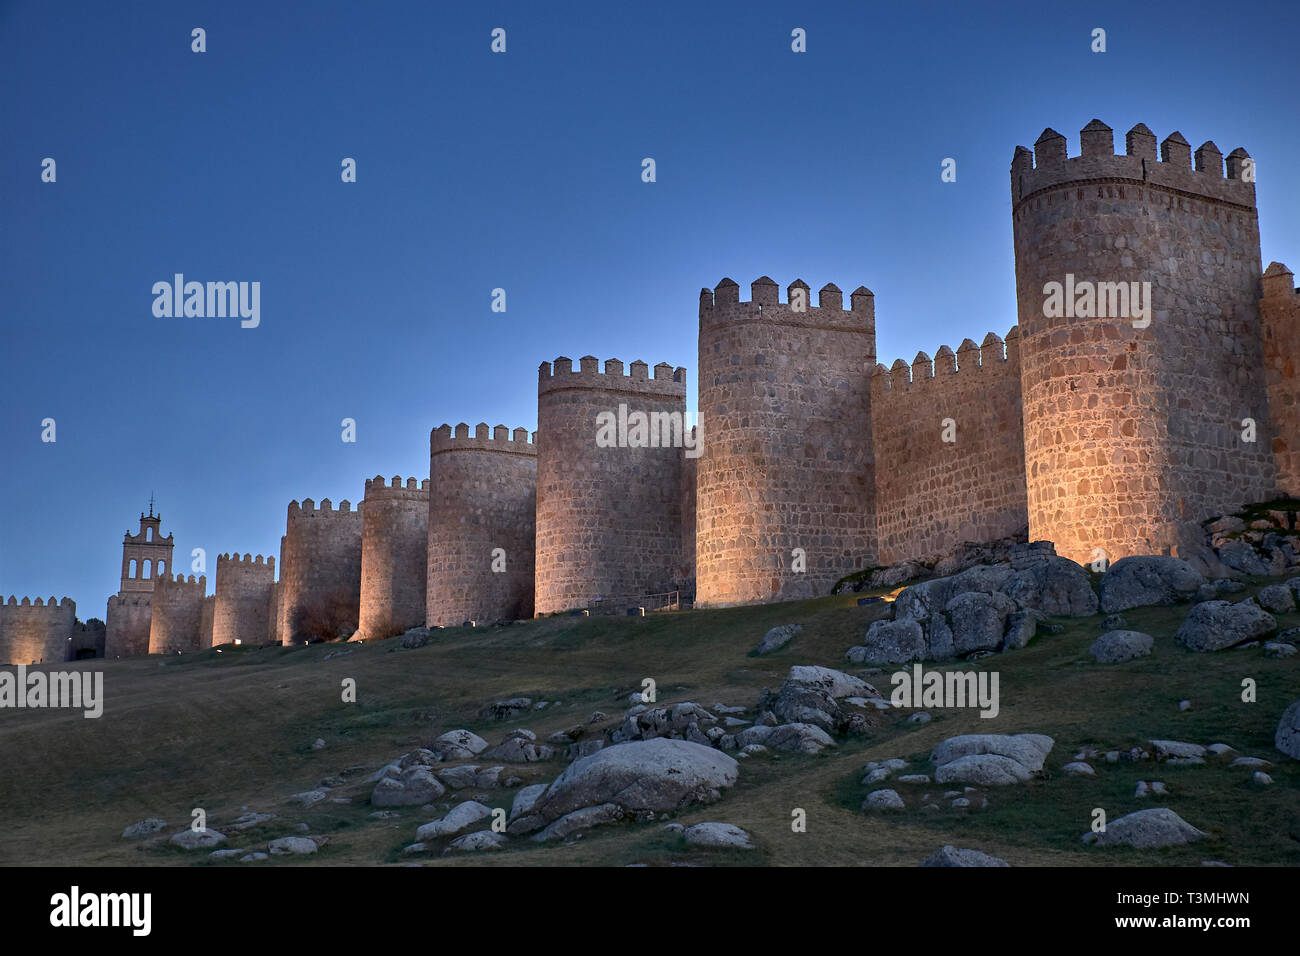 Vues de la ville d'Avila en Espagne, ville fortifiée médiévale parfaitement préservée Banque D'Images